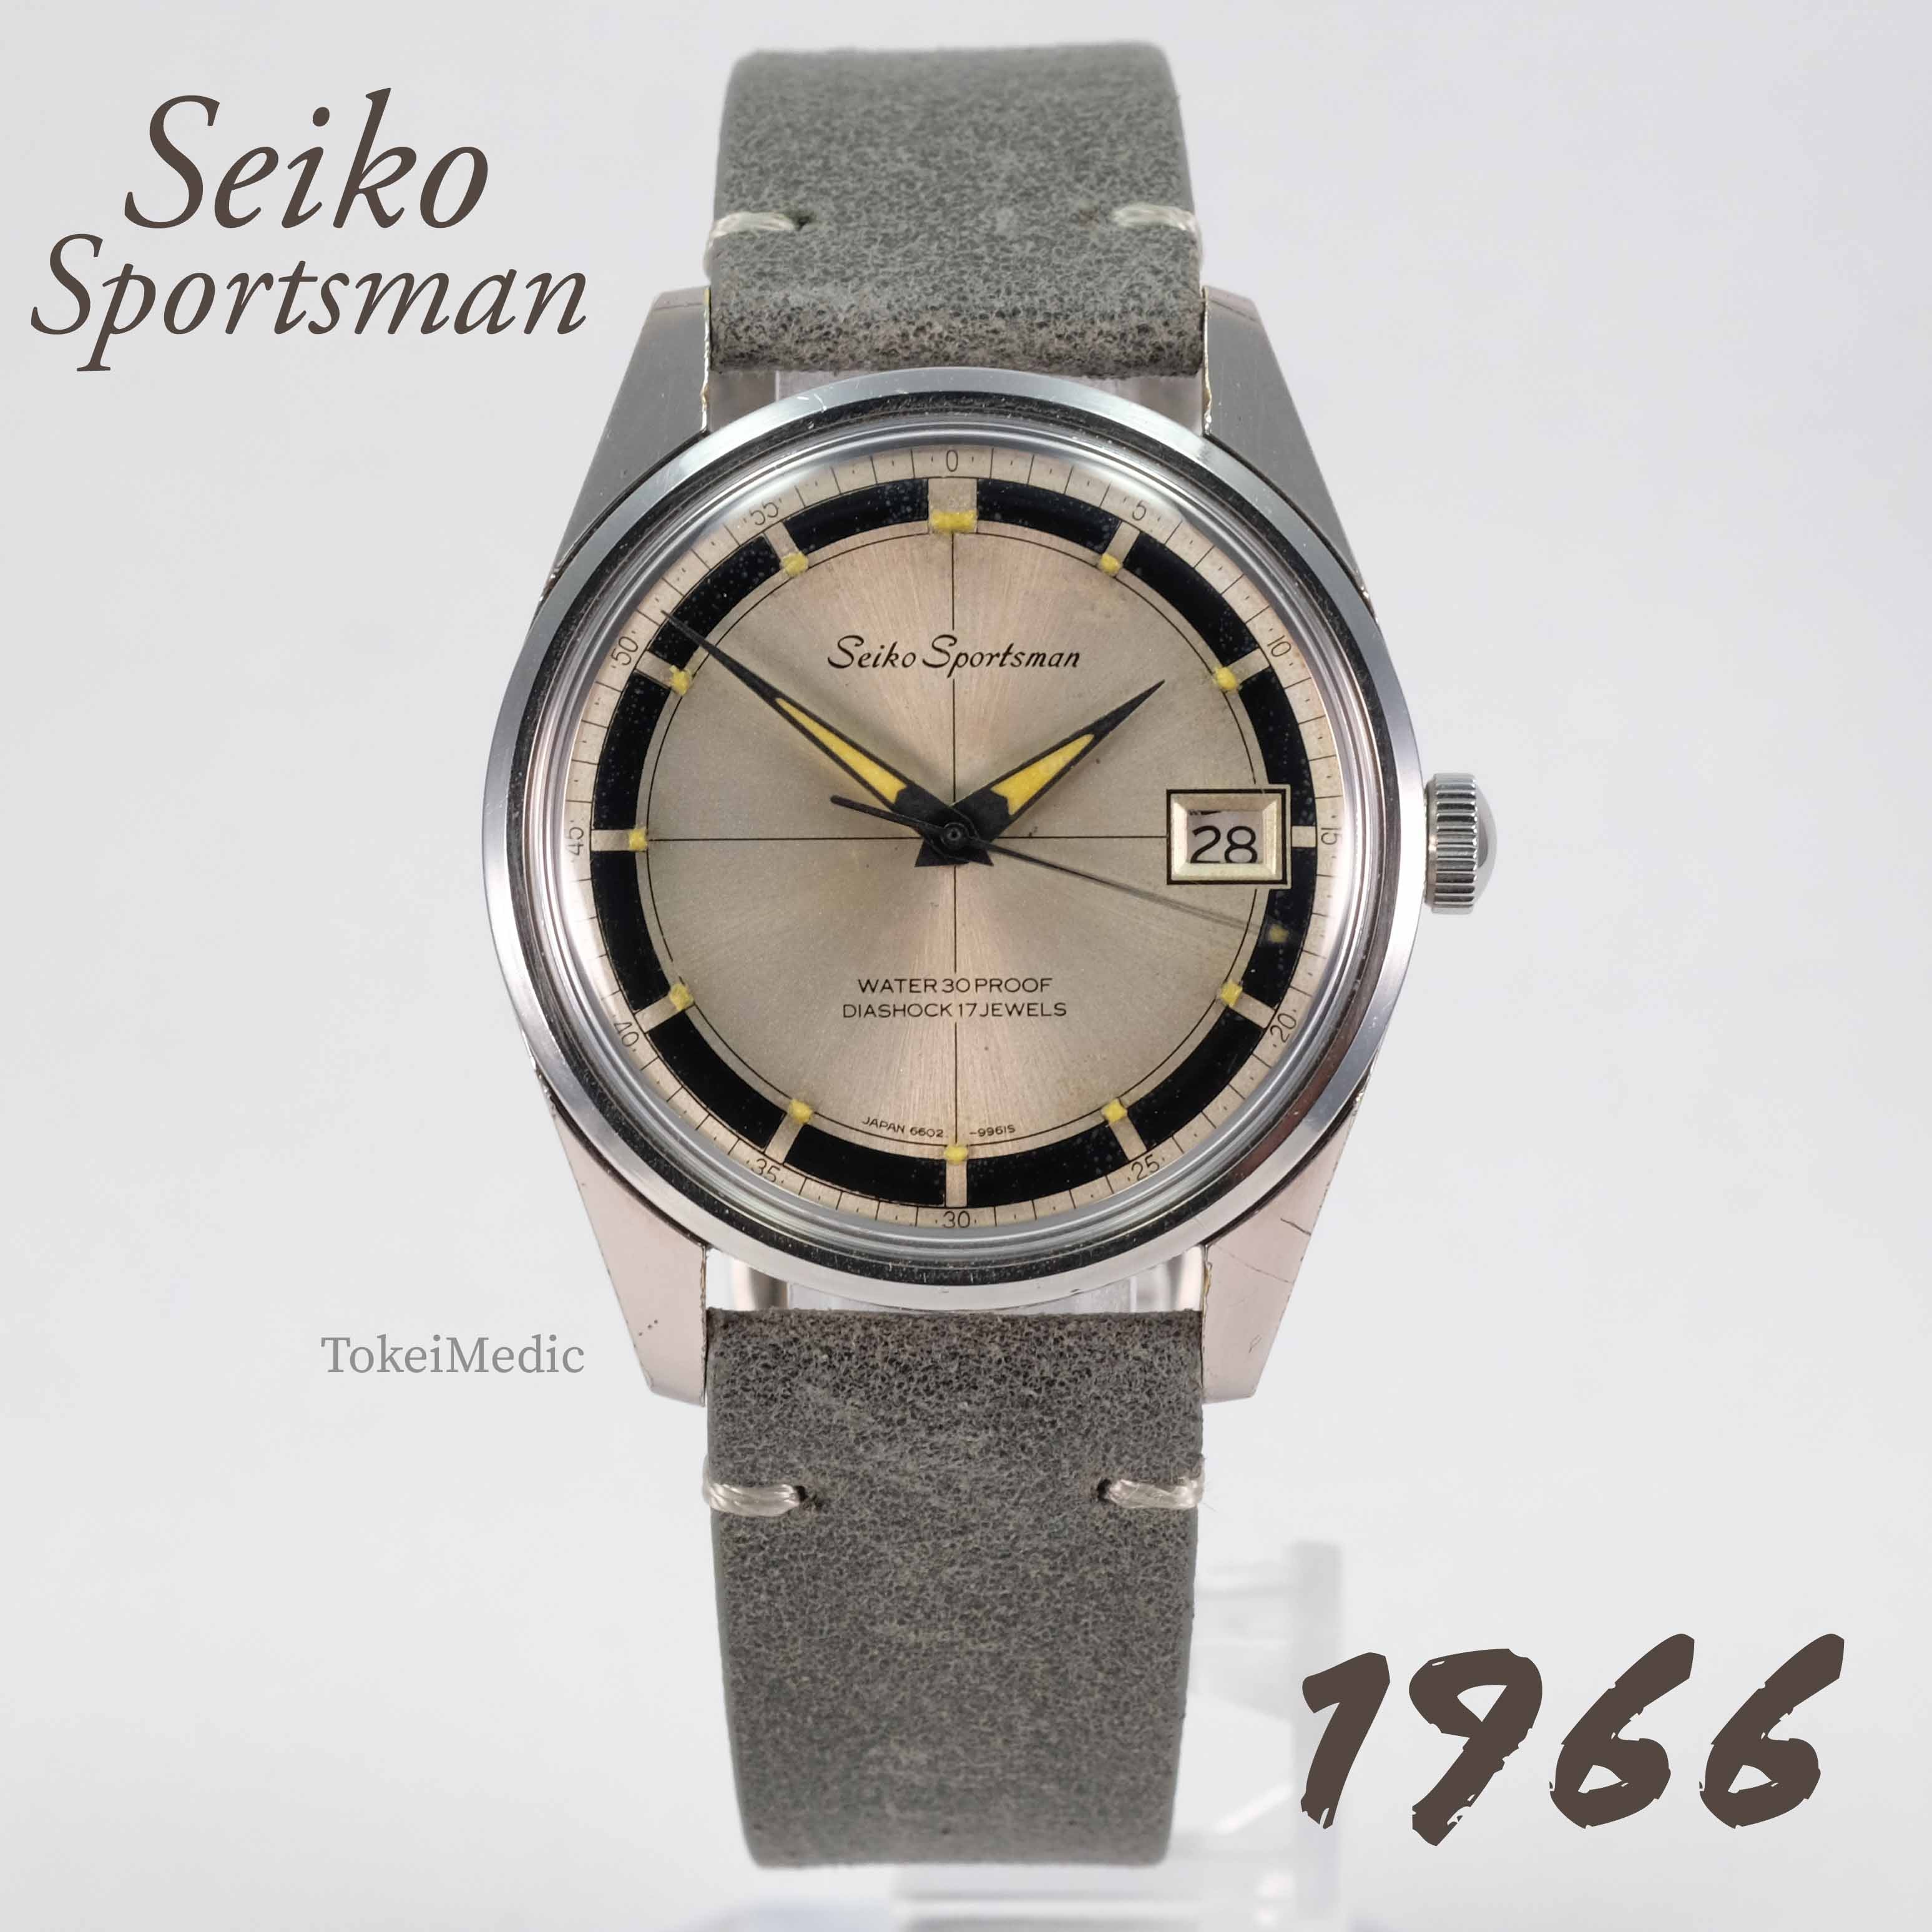 Vintage Seiko Manual Winding – TokeiMedic